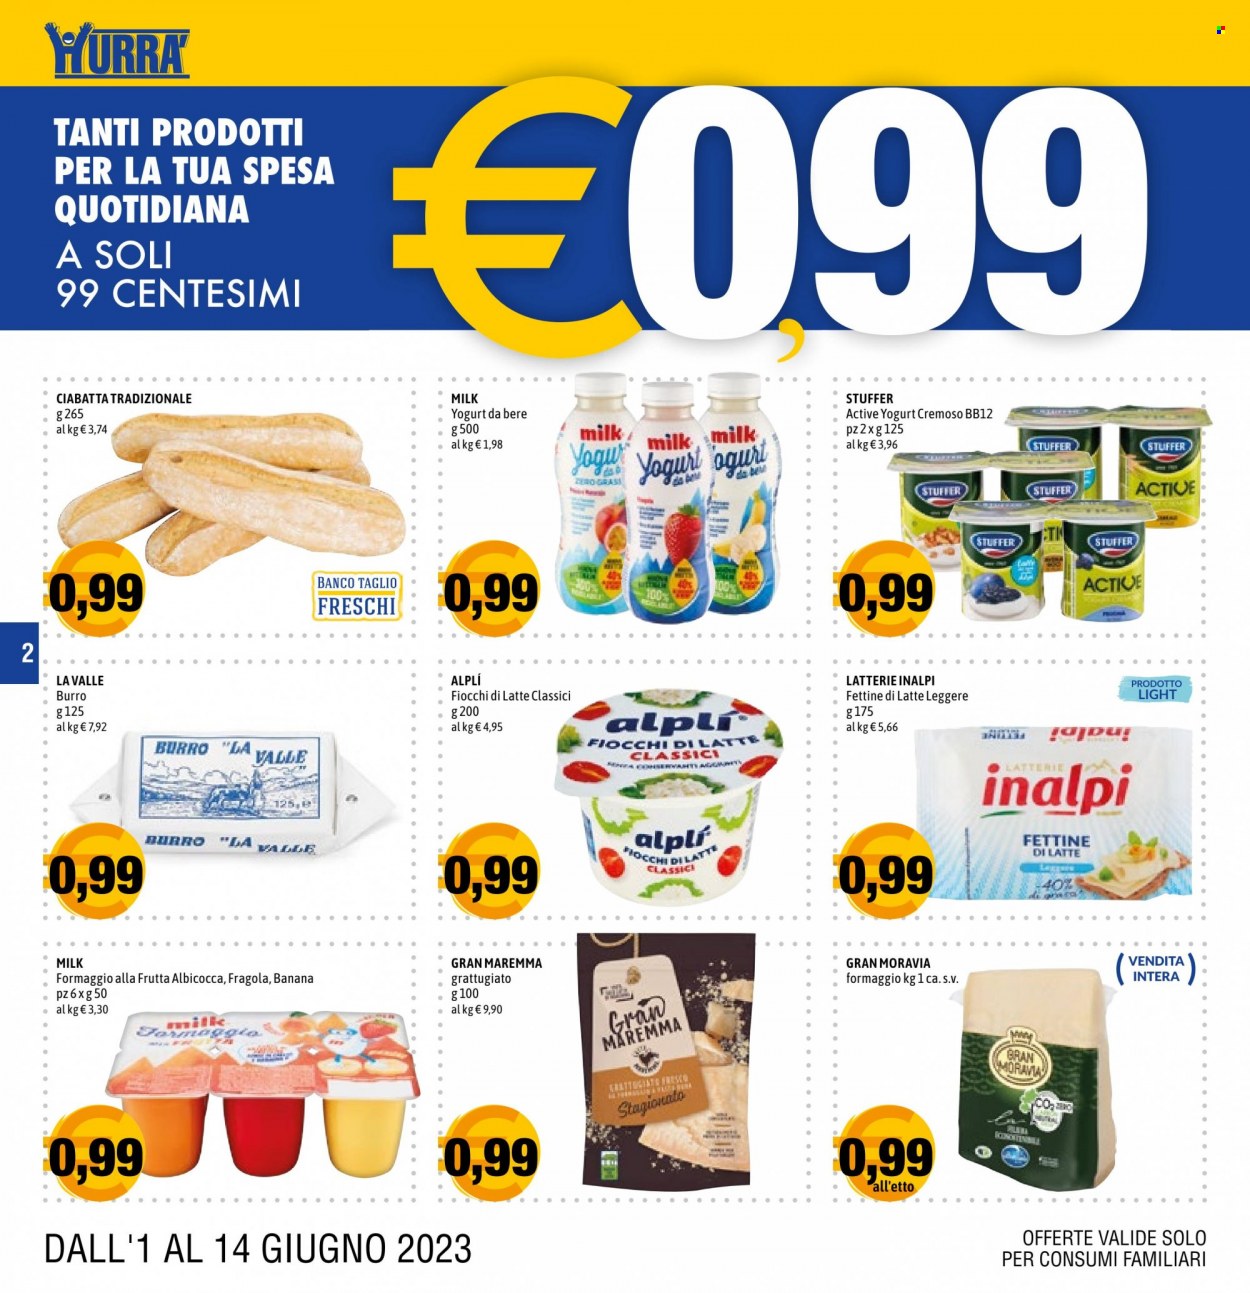 thumbnail - Volantino Hurrà Discount - 1/6/2023 - 14/6/2023 - Prodotti in offerta - ciabatta, formaggio, fiocchi di latte, yogurt, burro, caffè. Pagina 2.